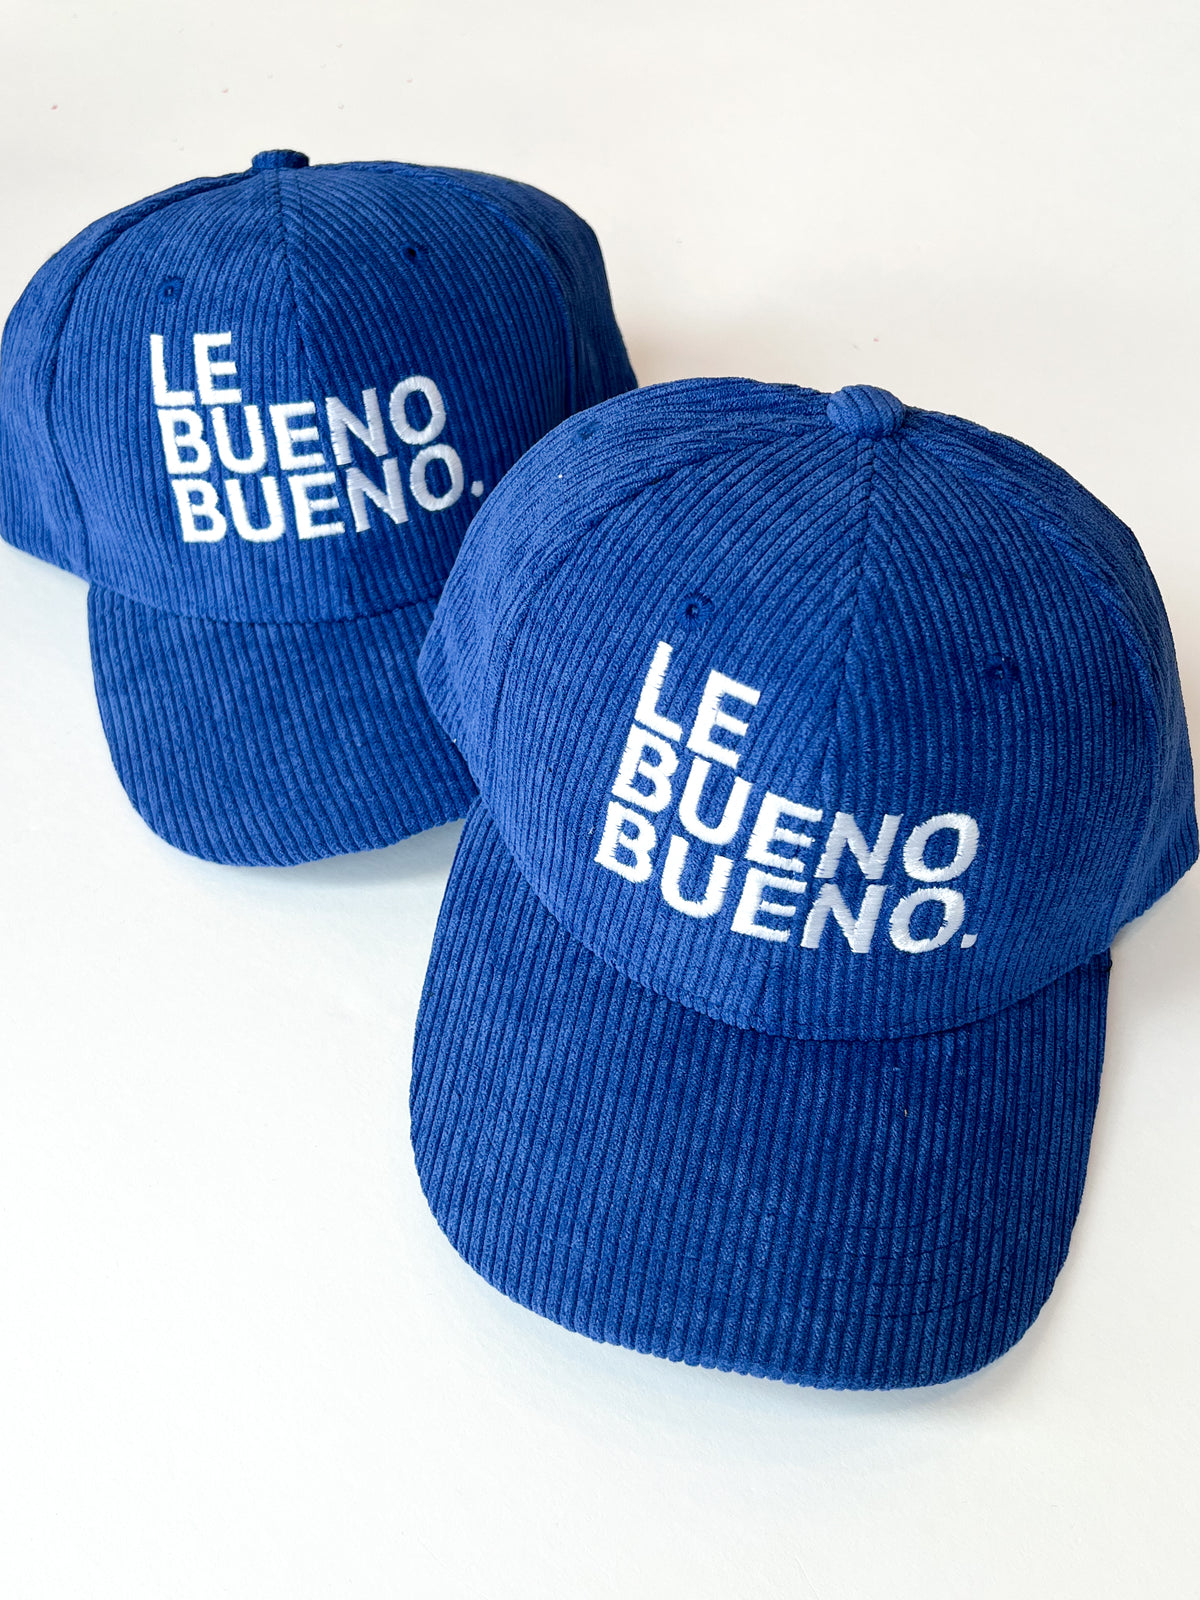 Le Bueno Bueno. Corduroy Hat- Blue